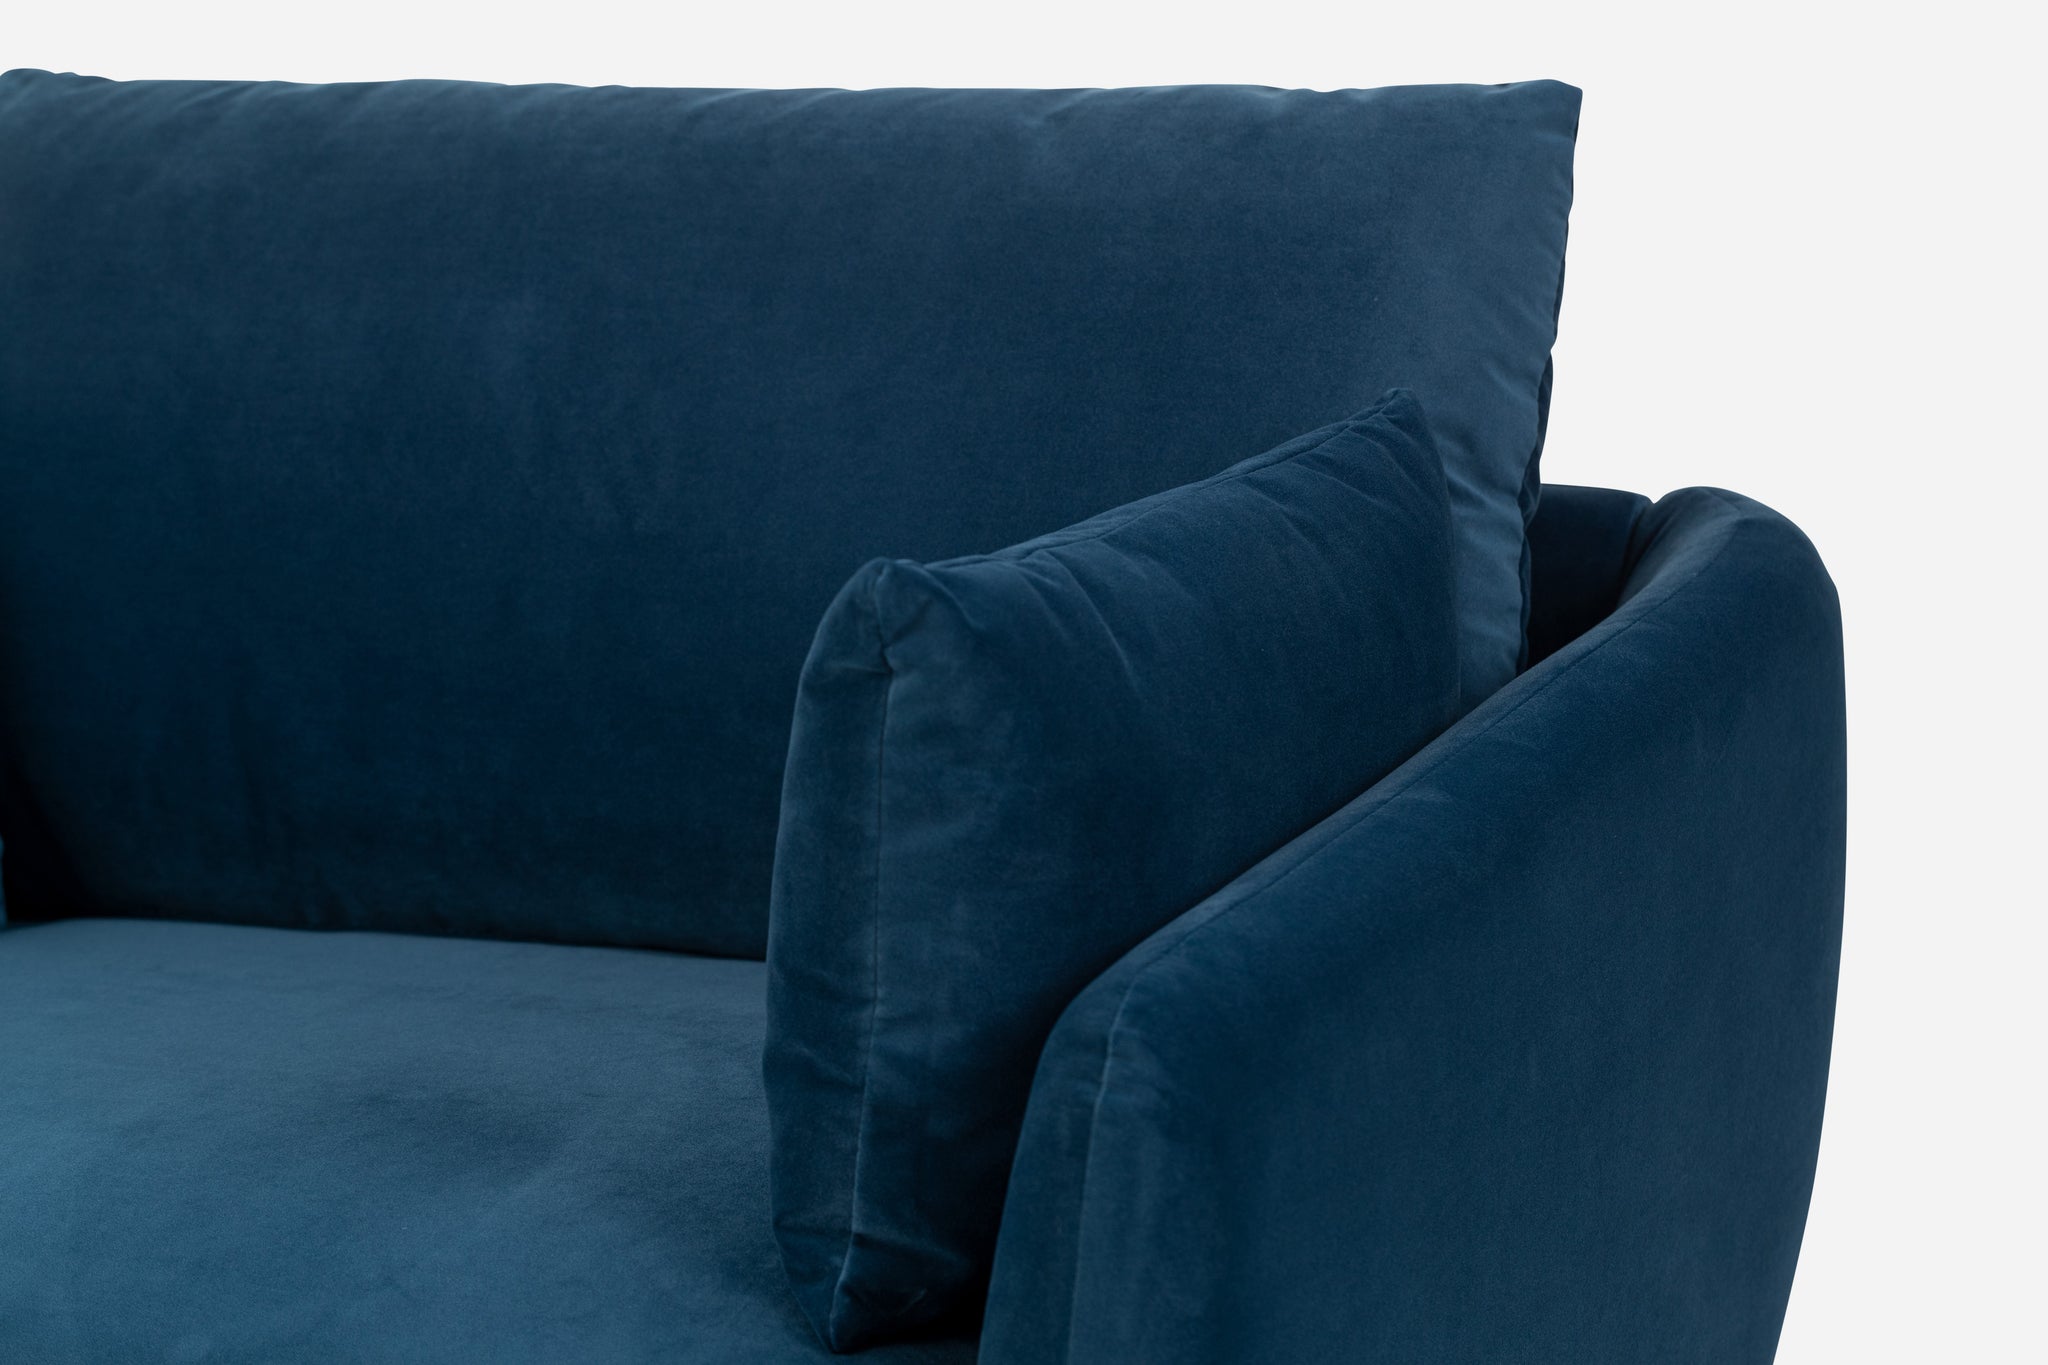 park sofa shown in blue velvet with gold legs